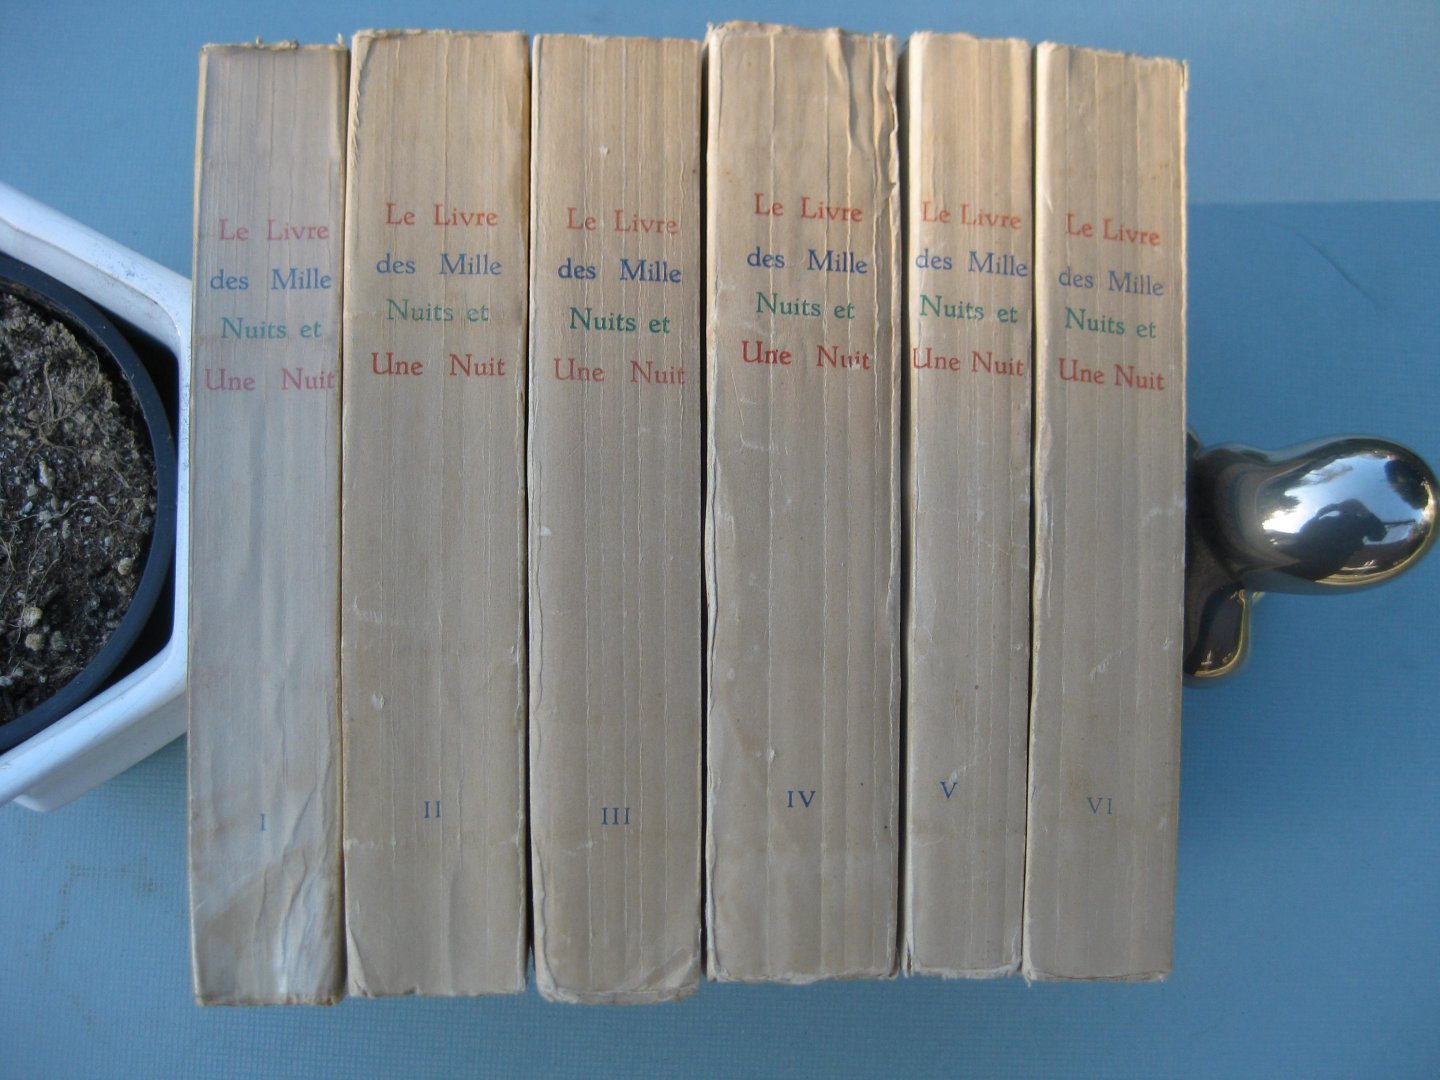 Mardrus, Dr. J.C.(vert.) - Le Livre des Mille Nuits et une Nuit. Edition complète en six volumes.